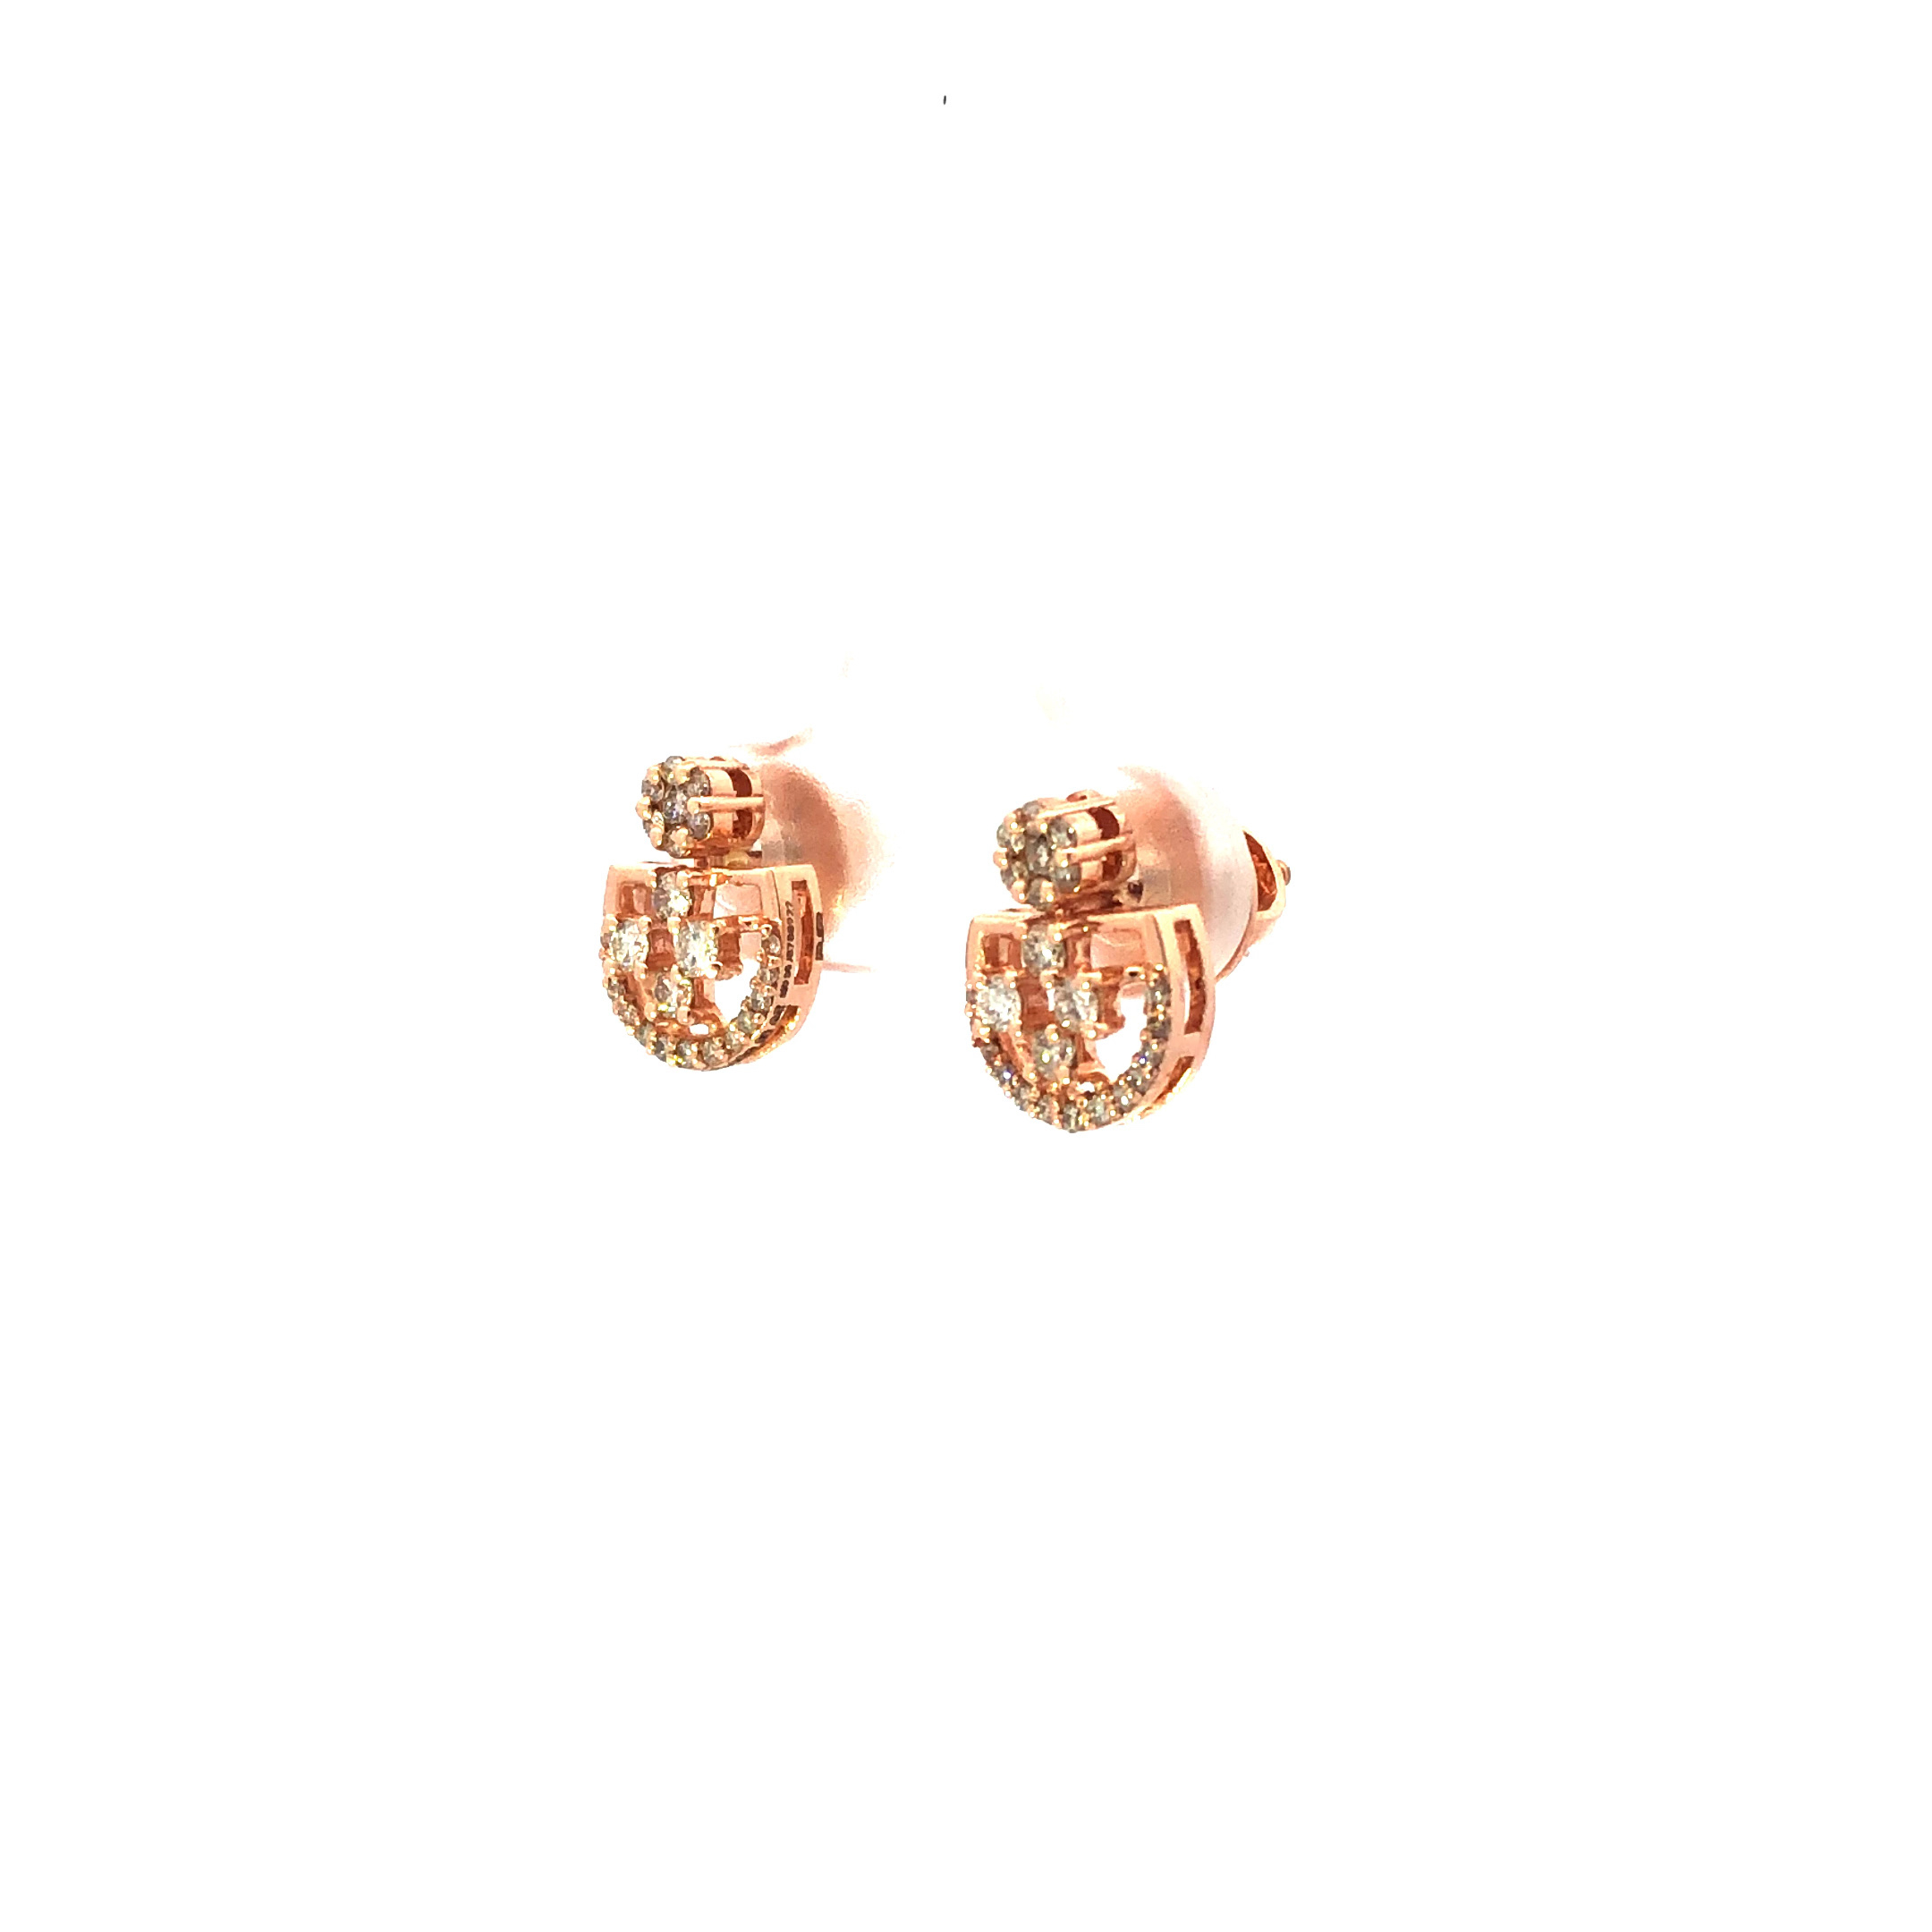 14kt diamond striking stud earrings in rosegold